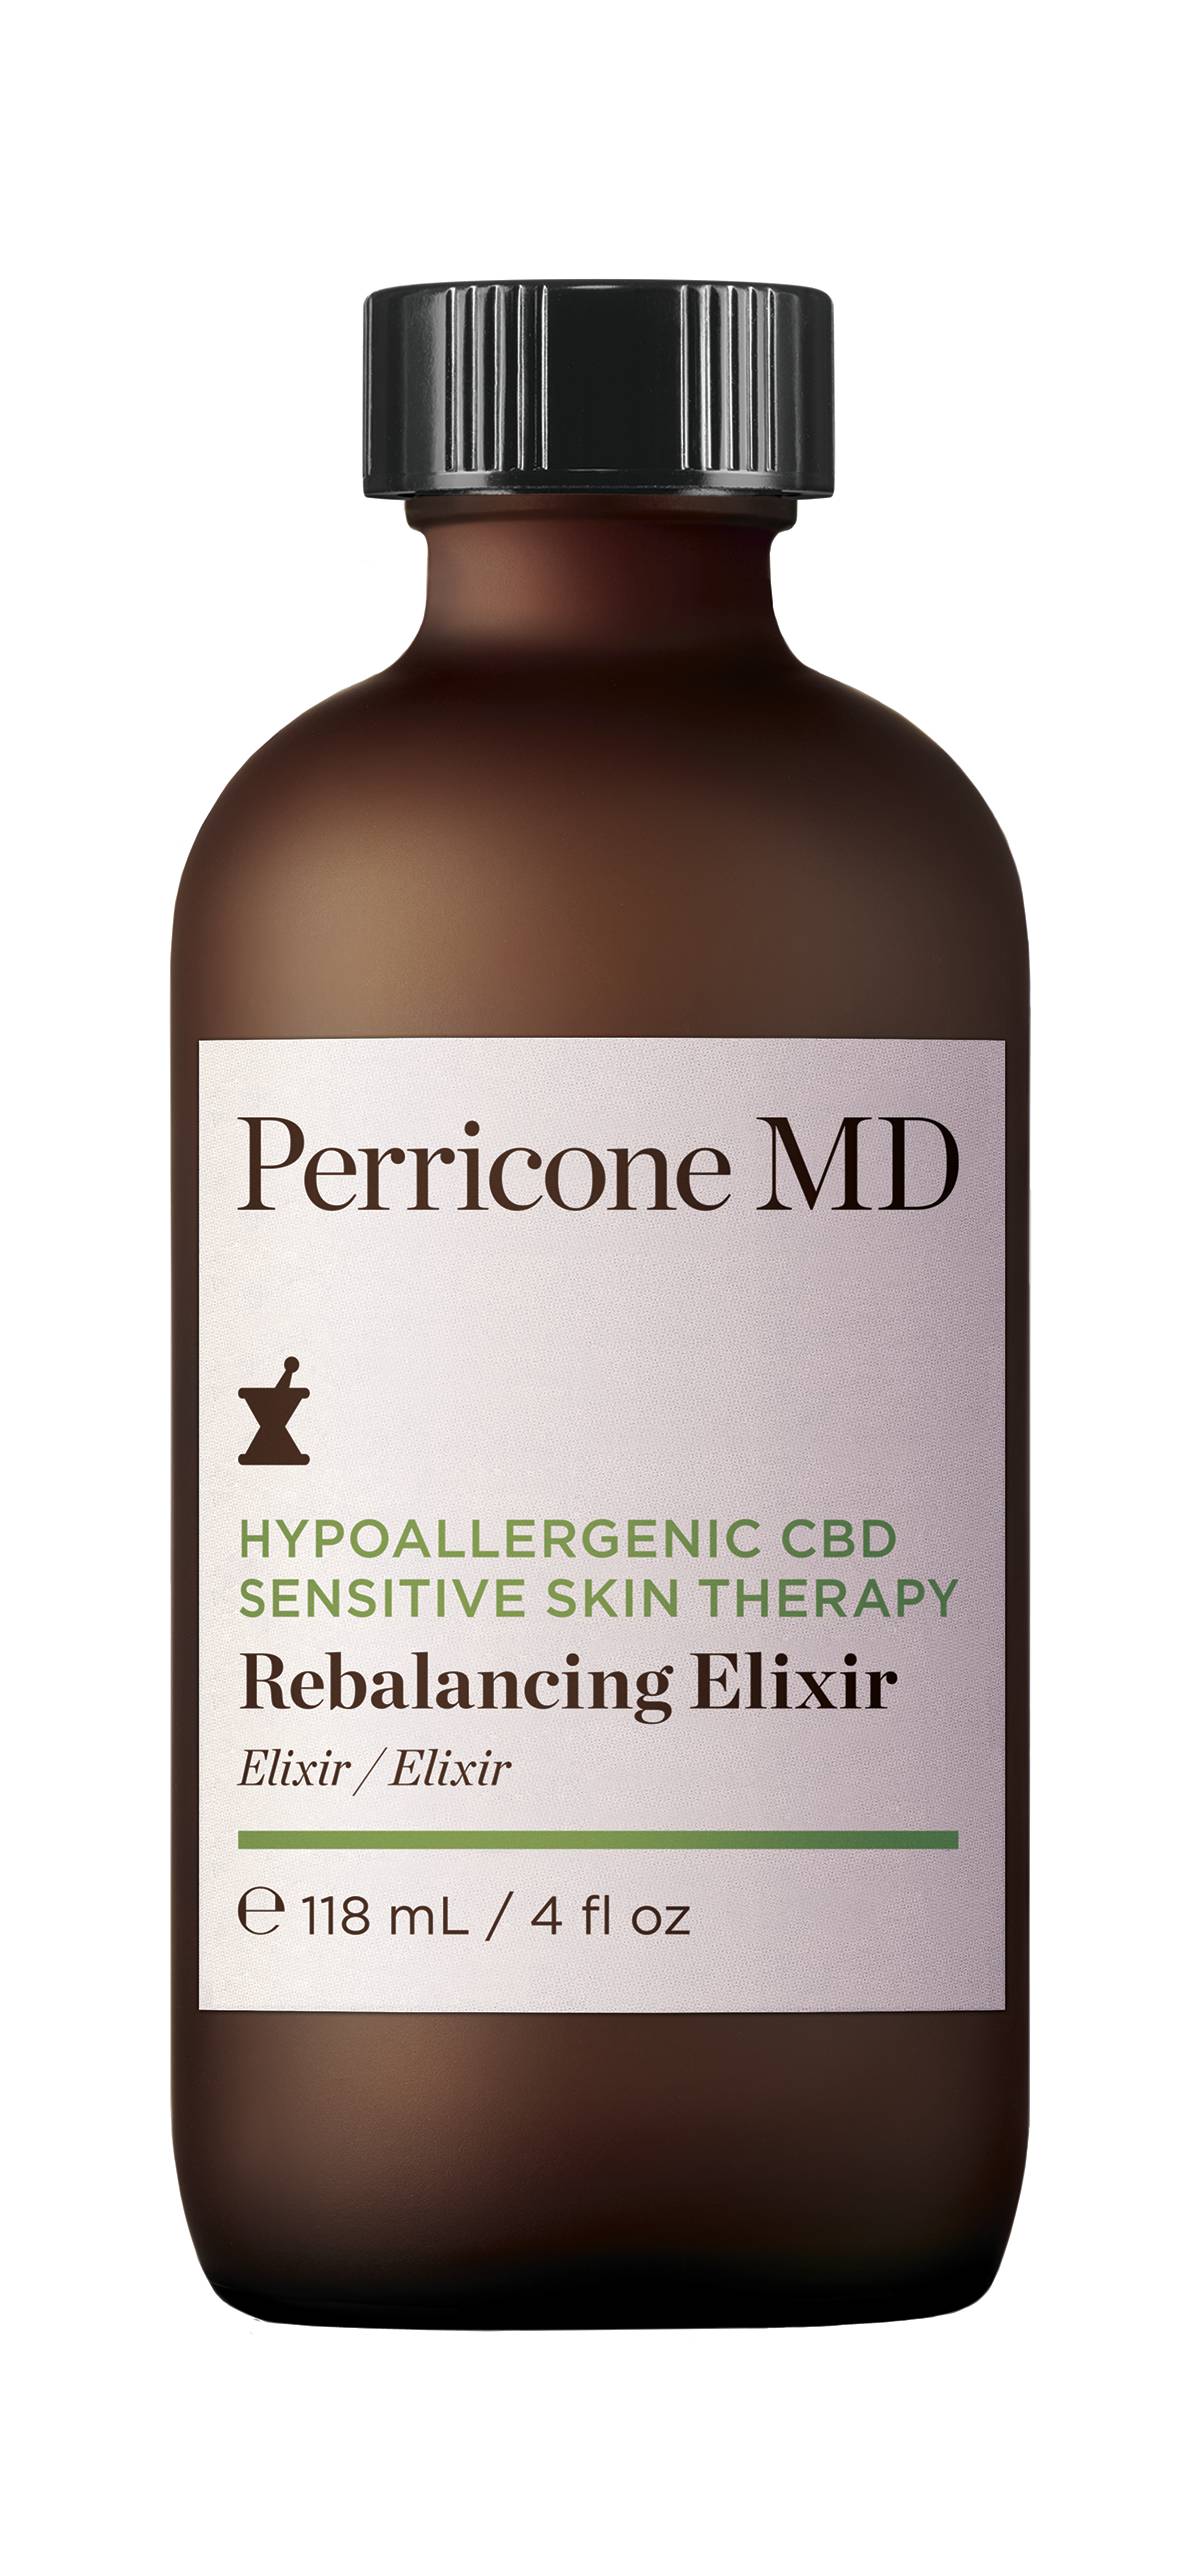 Perricone MD CBD sensitive skin therapy